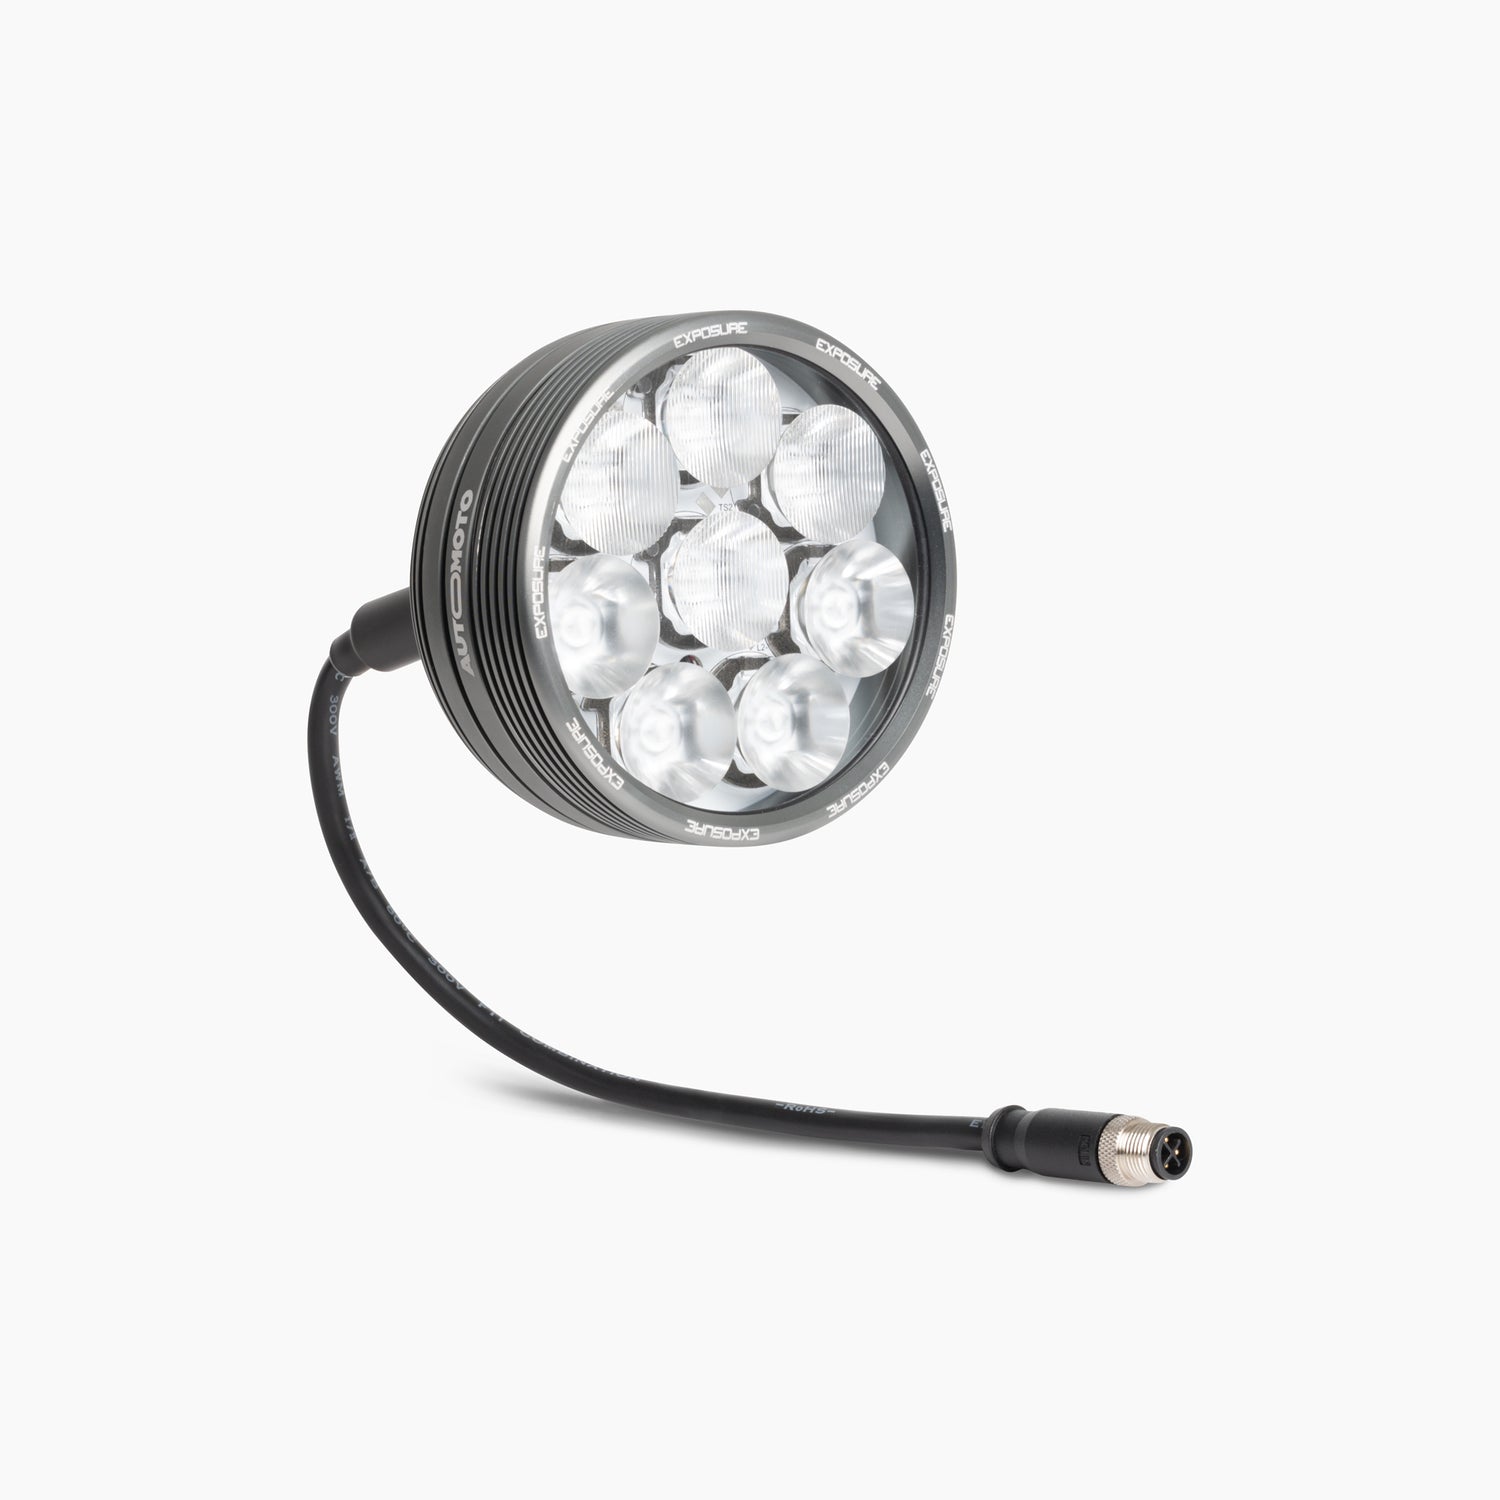 AutoMoto Radial 8 LED Light - 4 Spotlight Lenses / 4 Wide Lenses